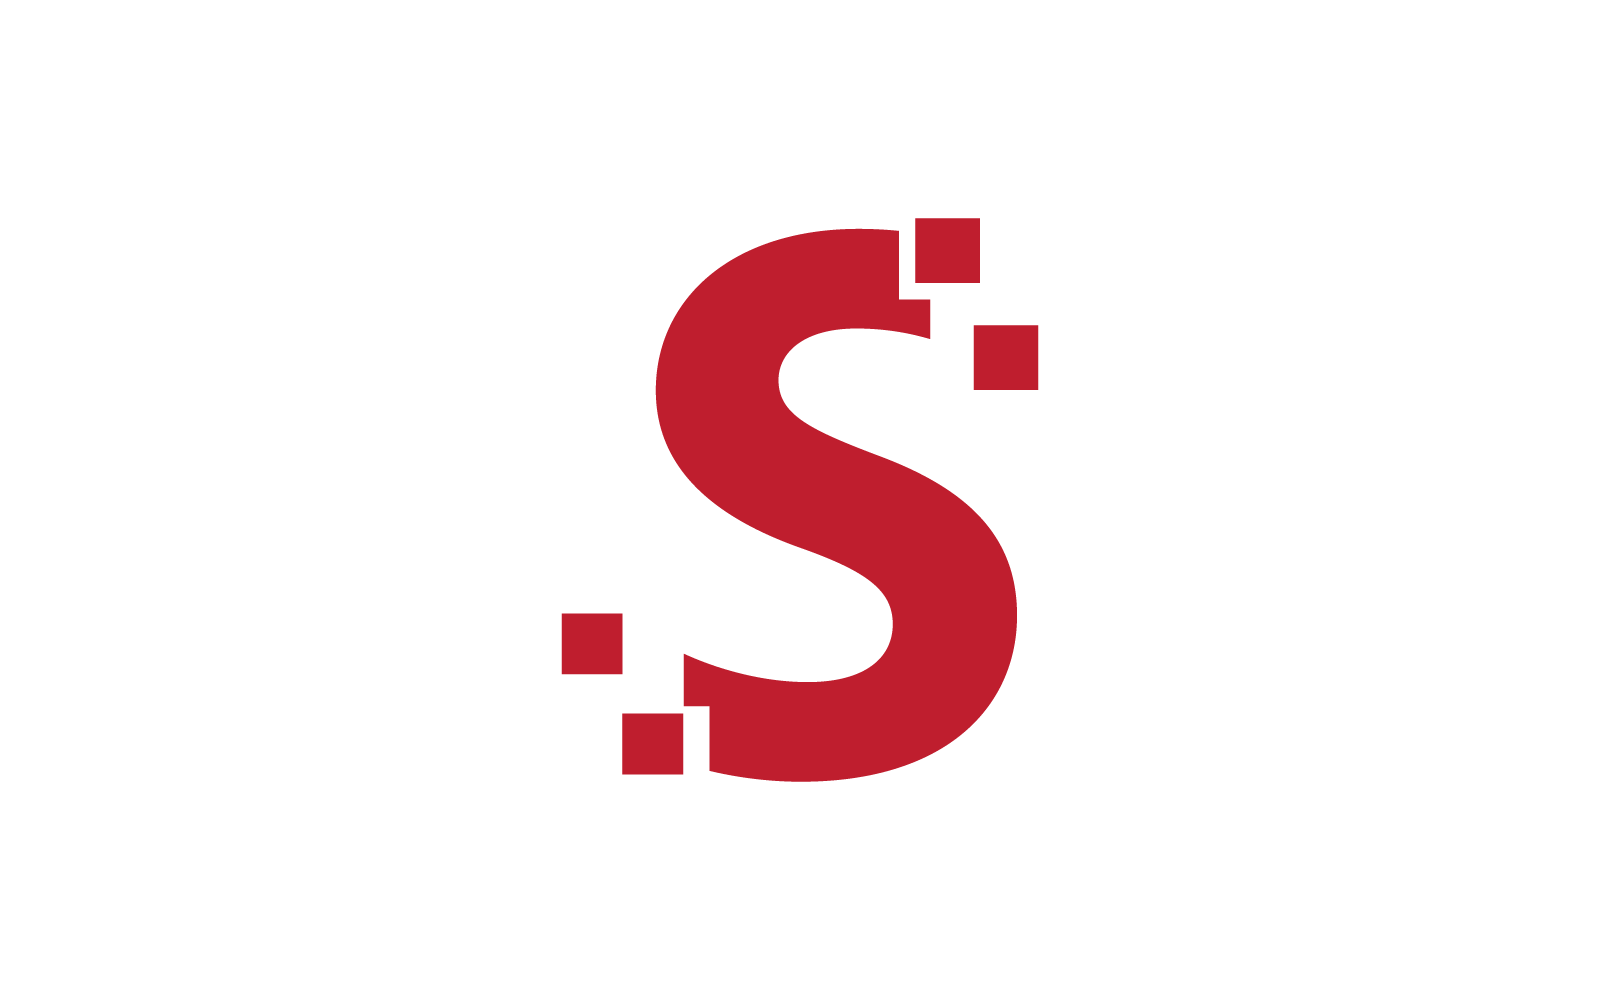 Modern S Initial, letter, alphabet font logo vector design